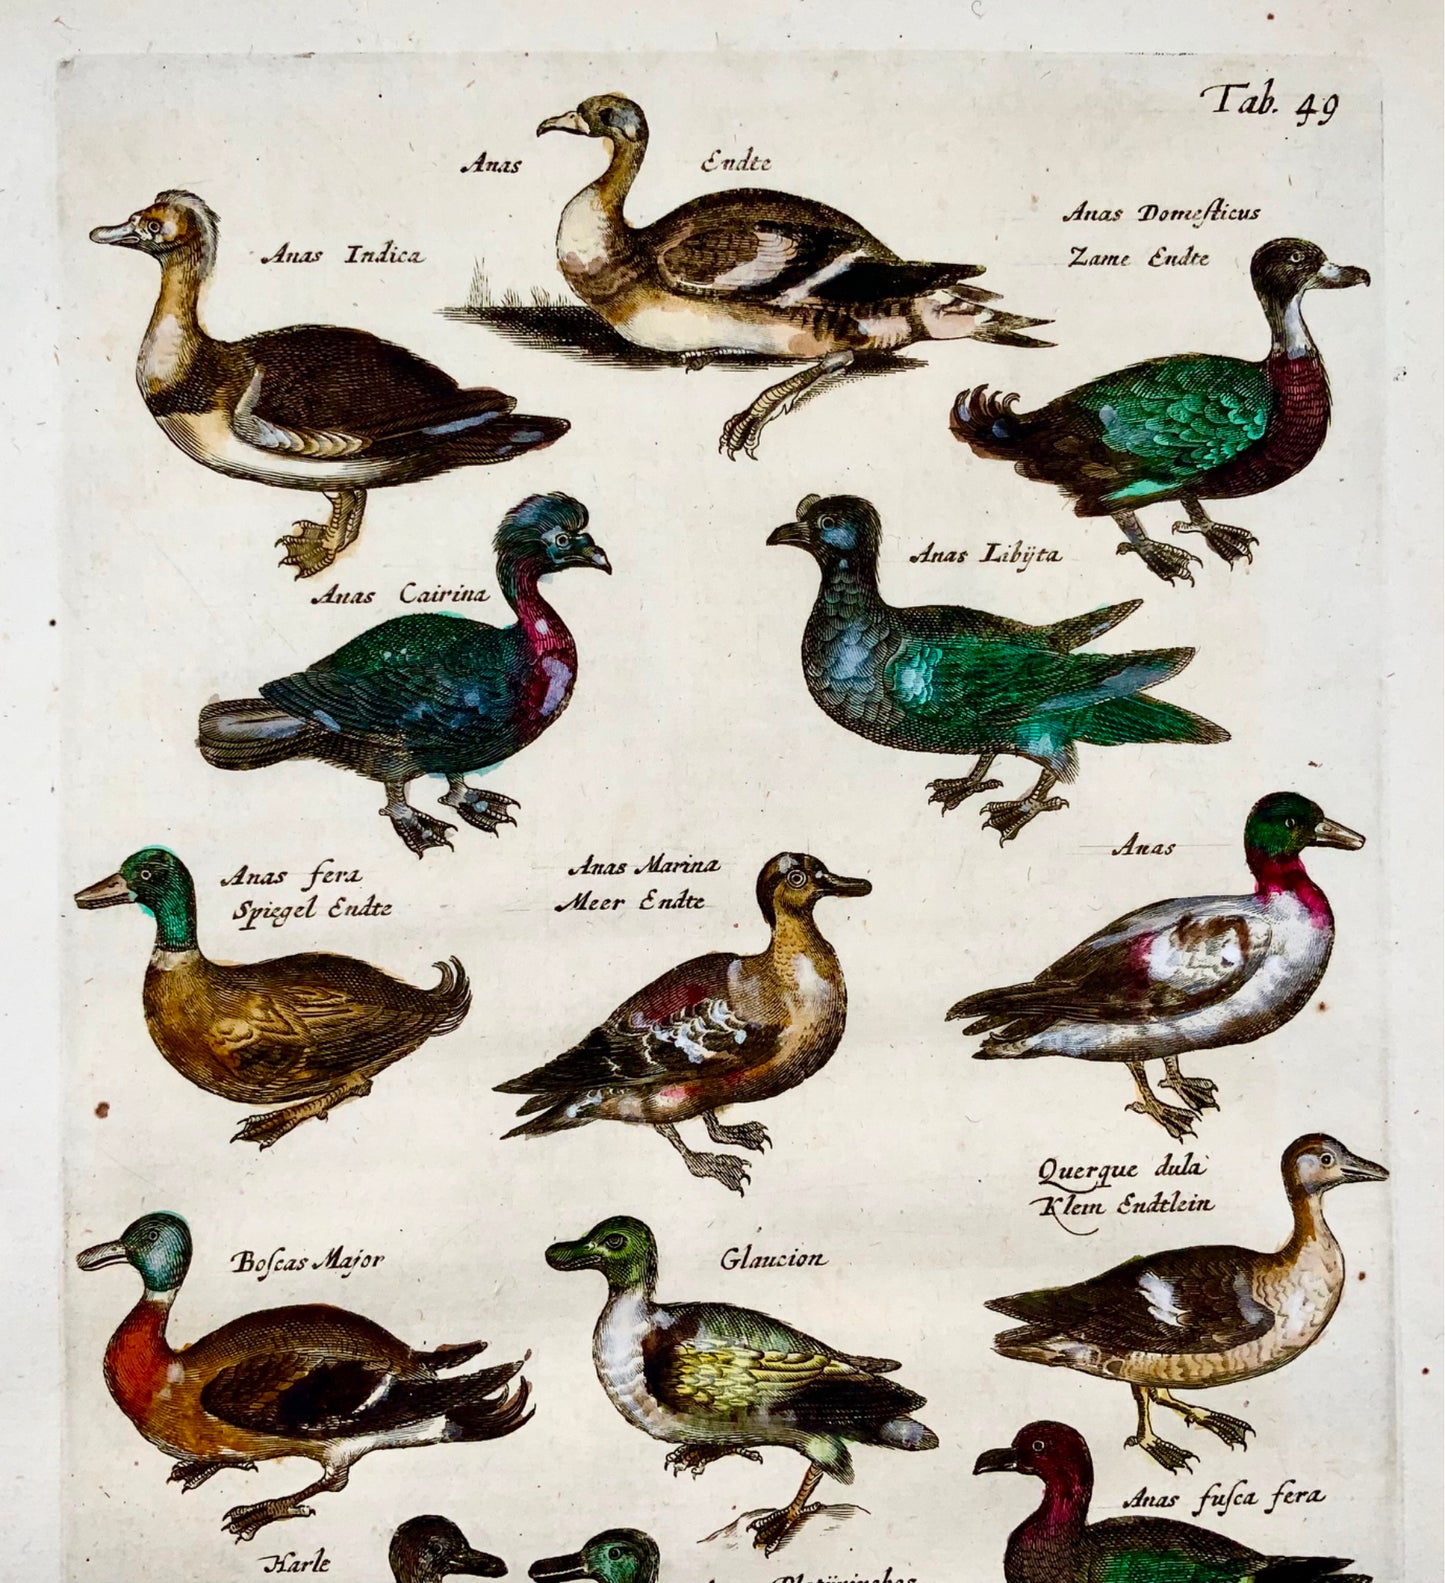 1657 Ducks - Ornithology - Matt. MERIAN Folio hand coloured copper engraving